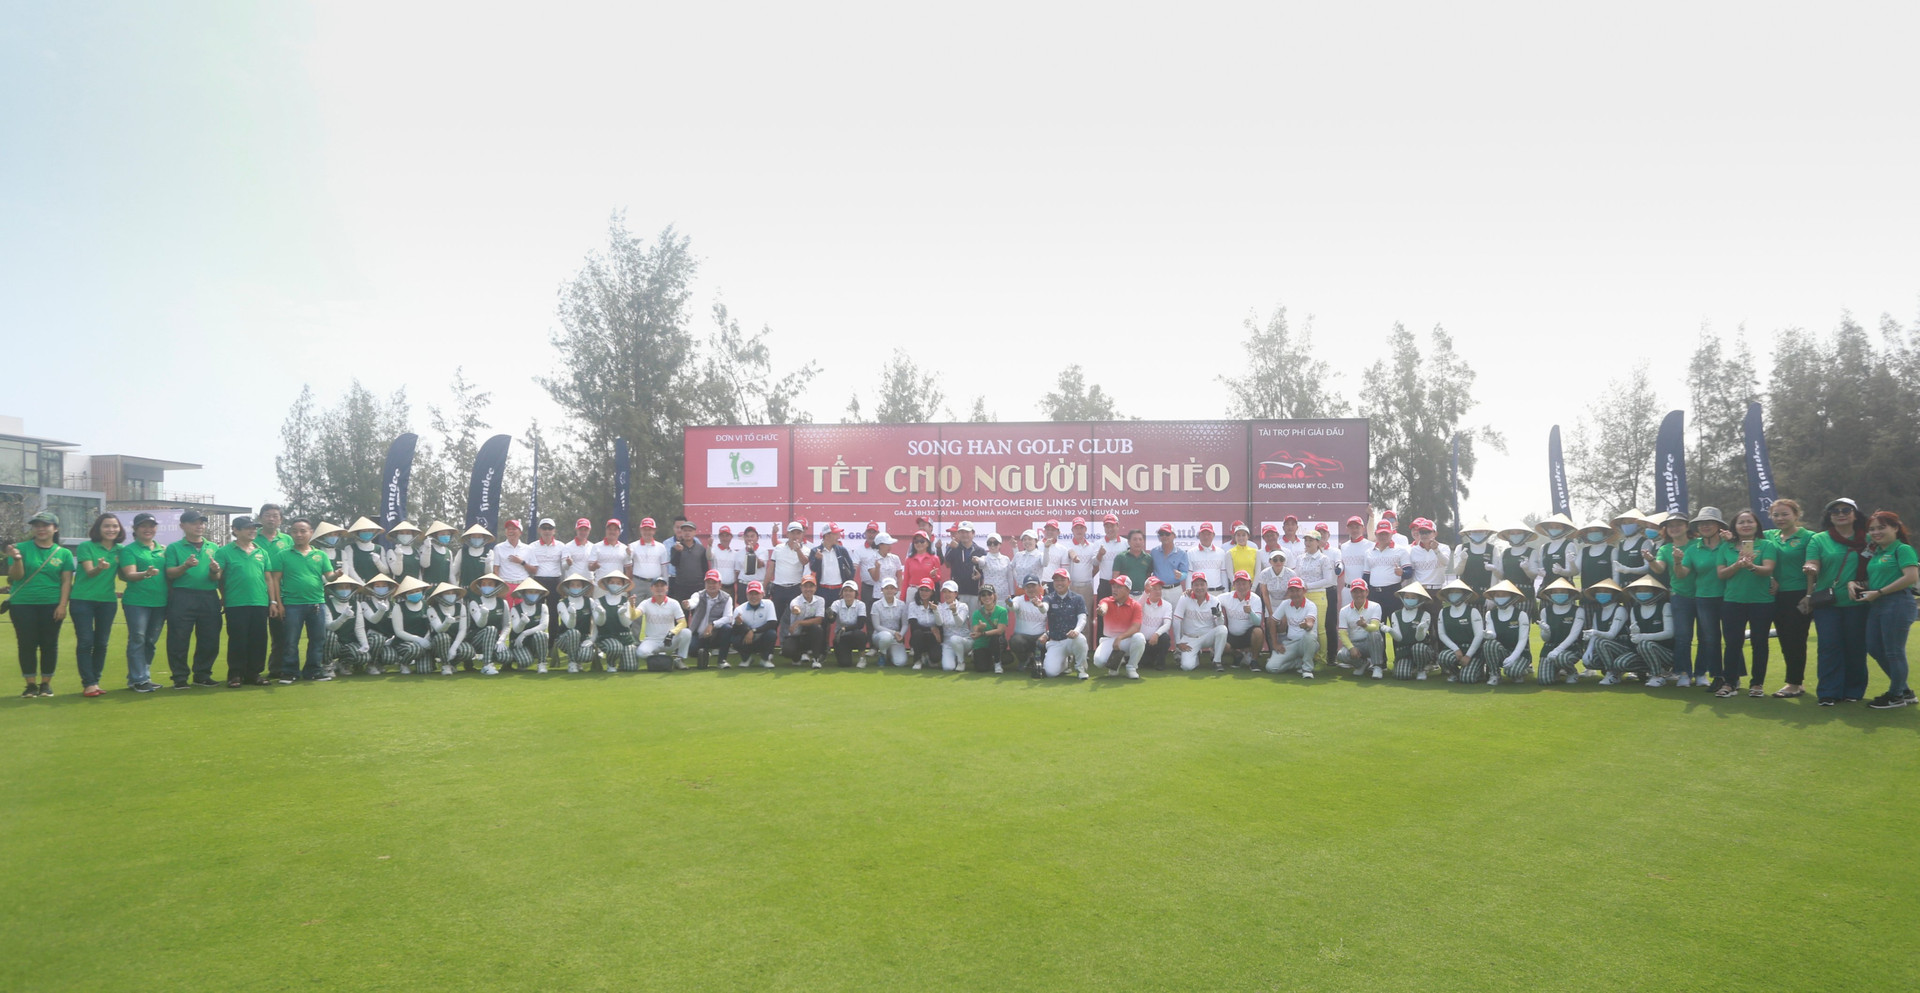 Hơn 2 tỷ đồng quyên góp được từ giải Song Han Golf Club - Tết cho người nghèo. - Ảnh 1.